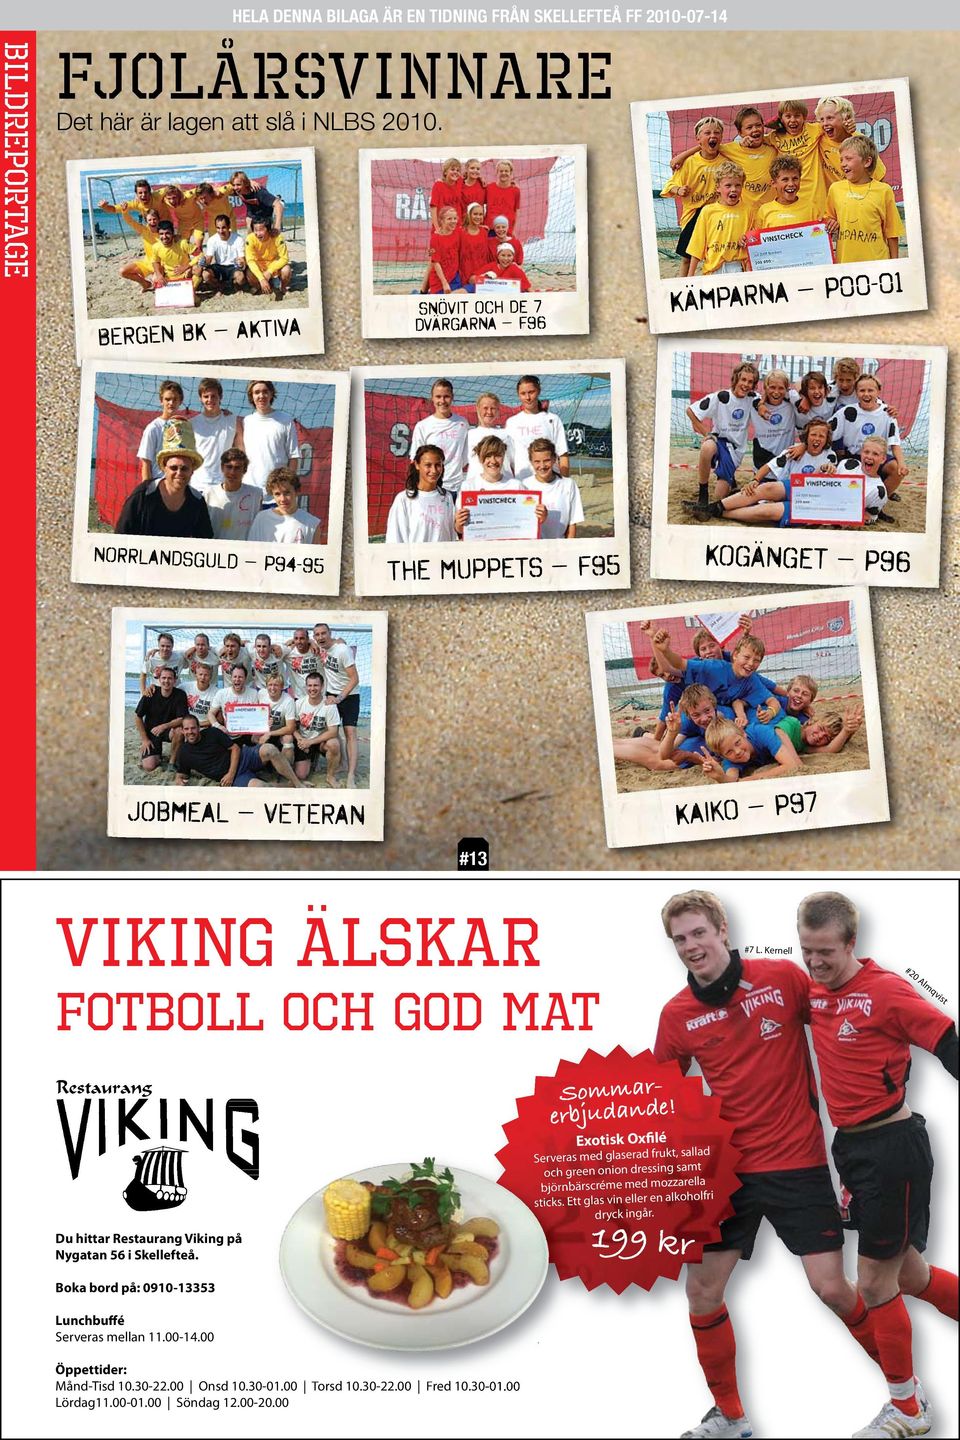 Kernell fotboll och god mat #20 Almqvist Du hittar Restaurang Viking på Nygatan 56 i Skellefteå. Sommarerbjudande!